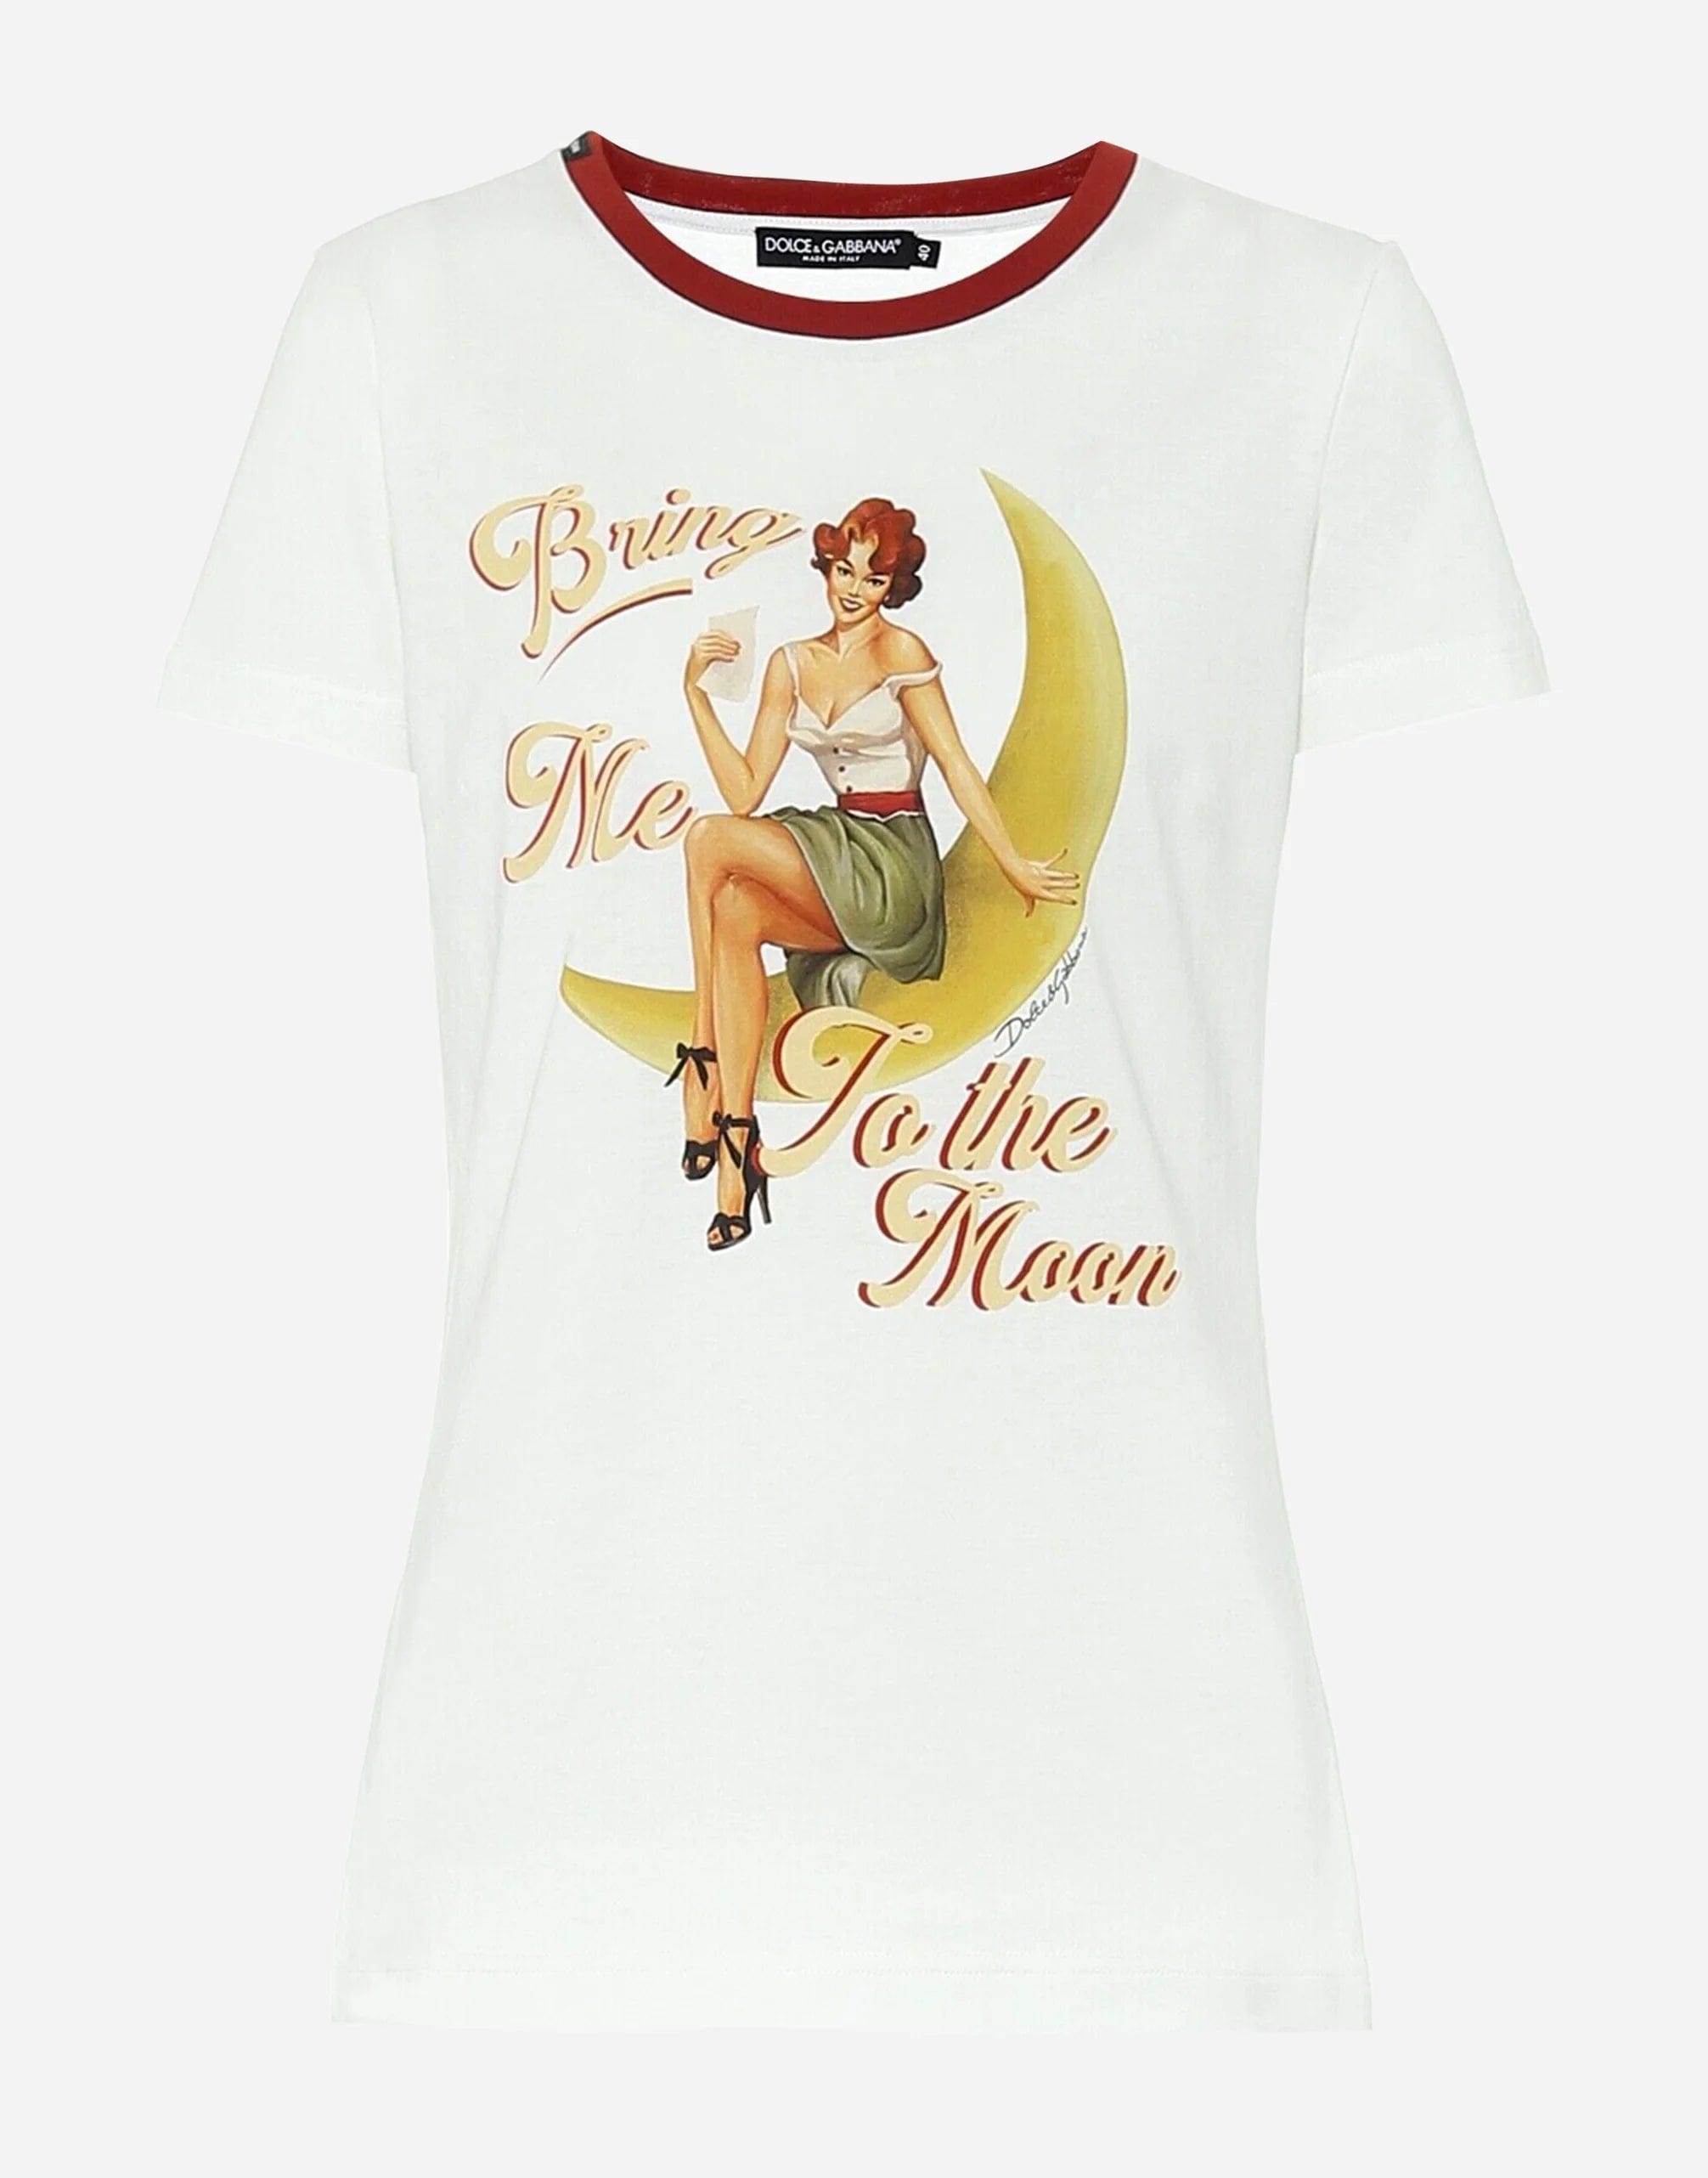 Breng me naar het T-shirt van de maan